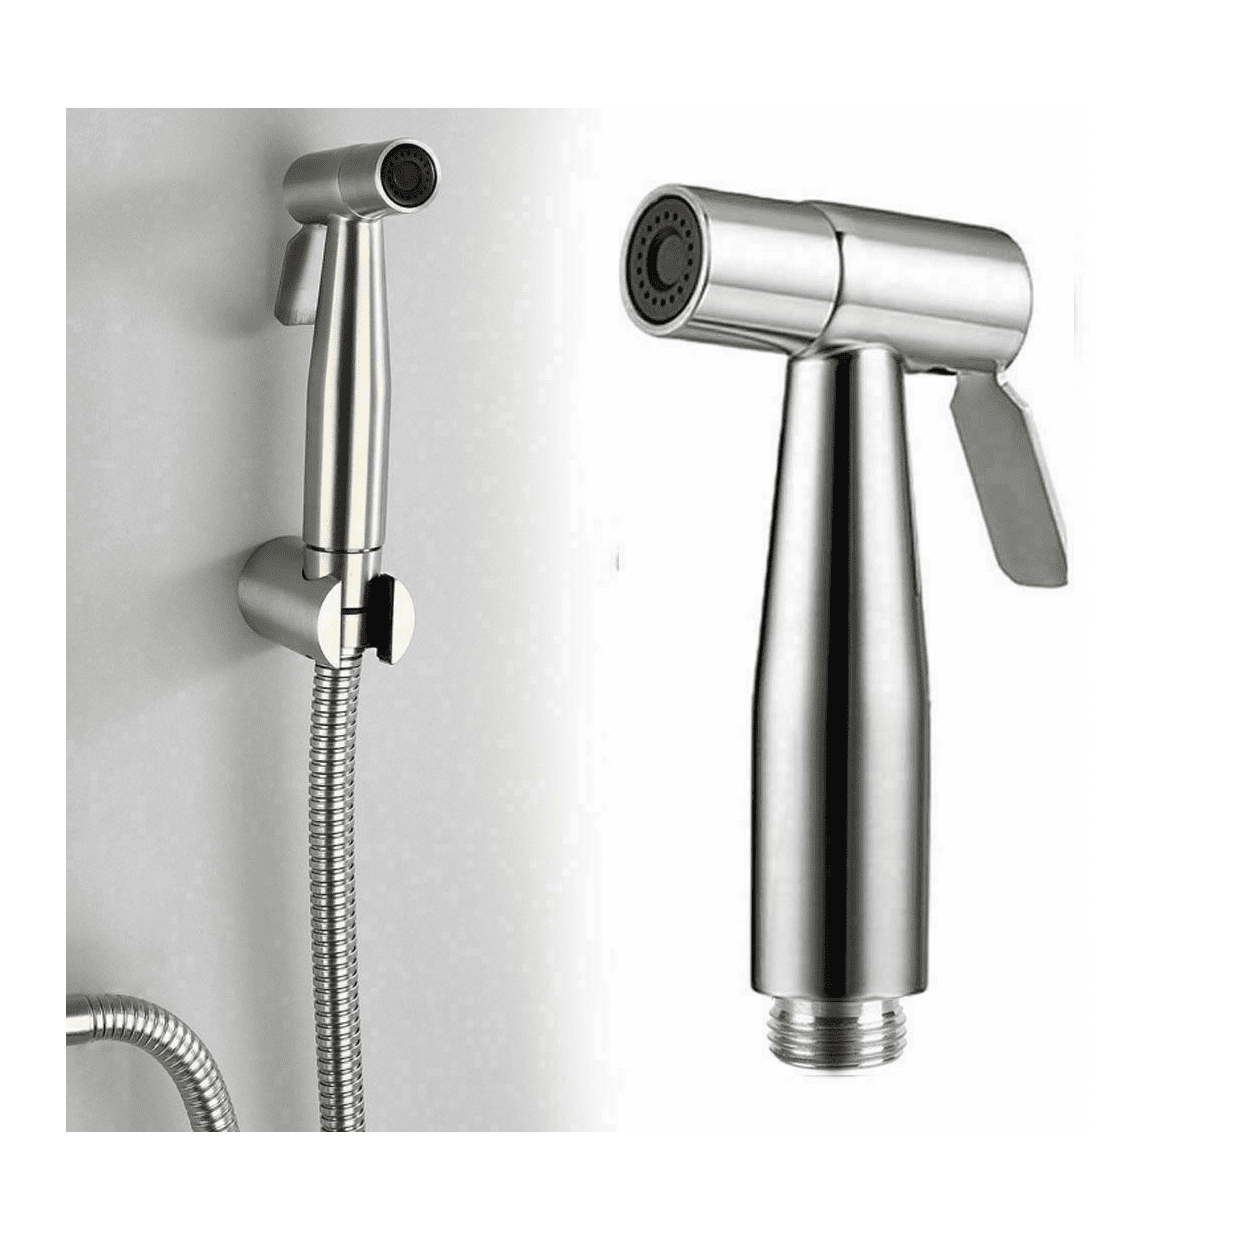 Stainless Steel Handheld Bidet Sprayer Shower Toilet Shattaf Adapter Hose kit BC